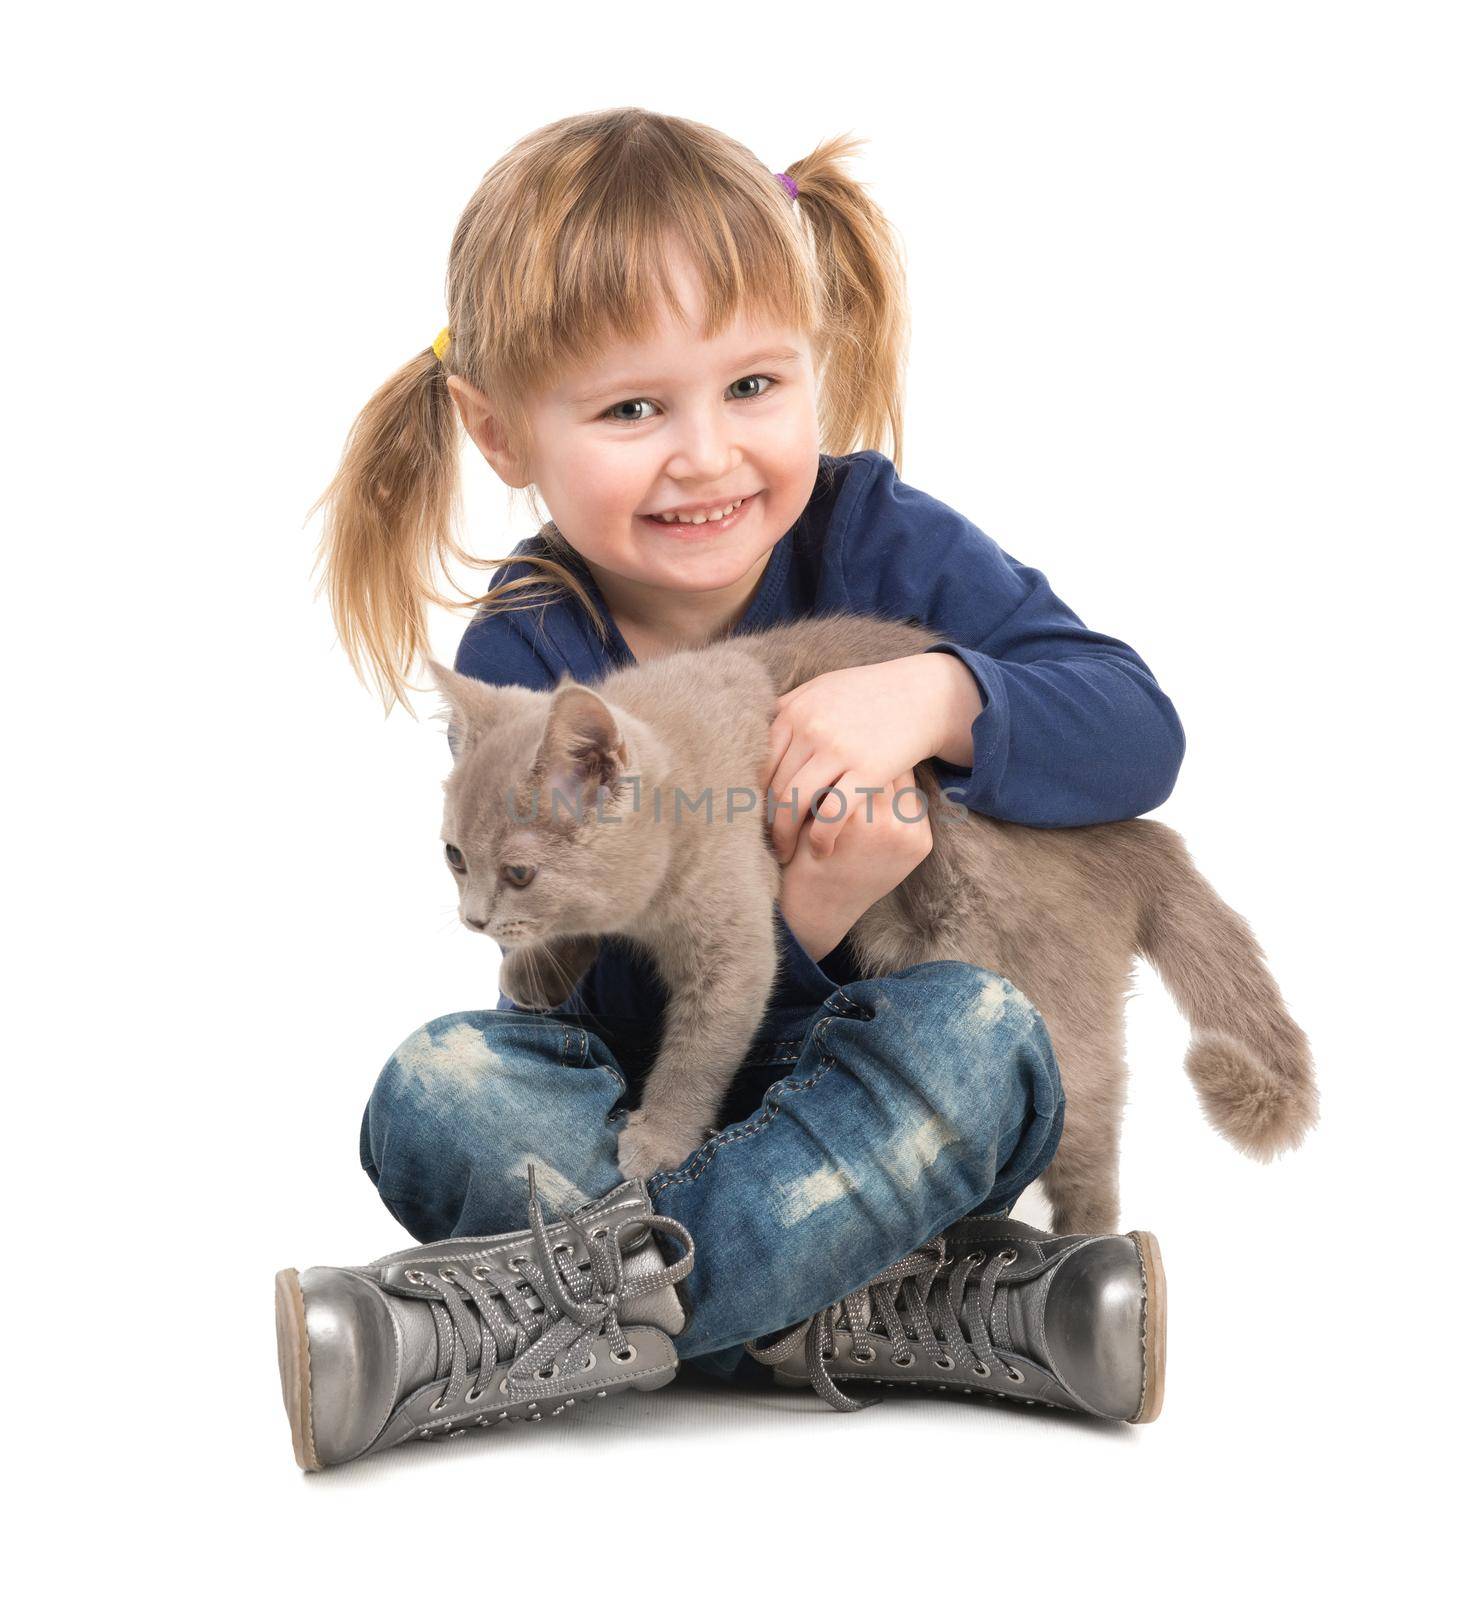 cute little girl with cat in hands by tan4ikk1